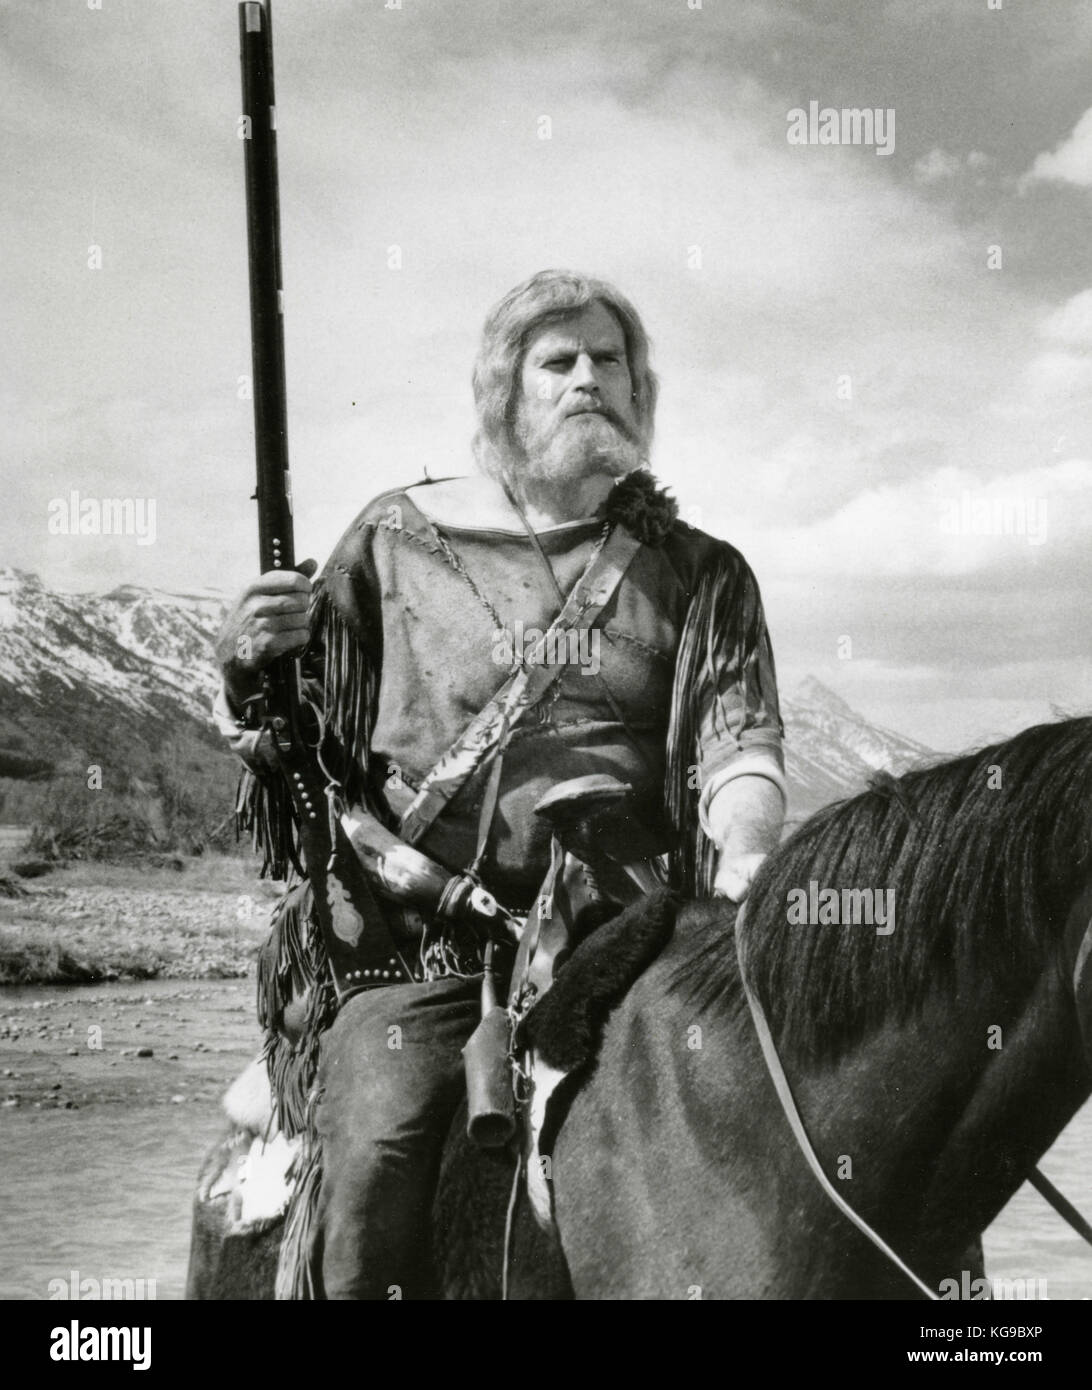 Amerikanischer Schauspieler Charlton Heston im Film Das Land, Stockfotografie - Alamy